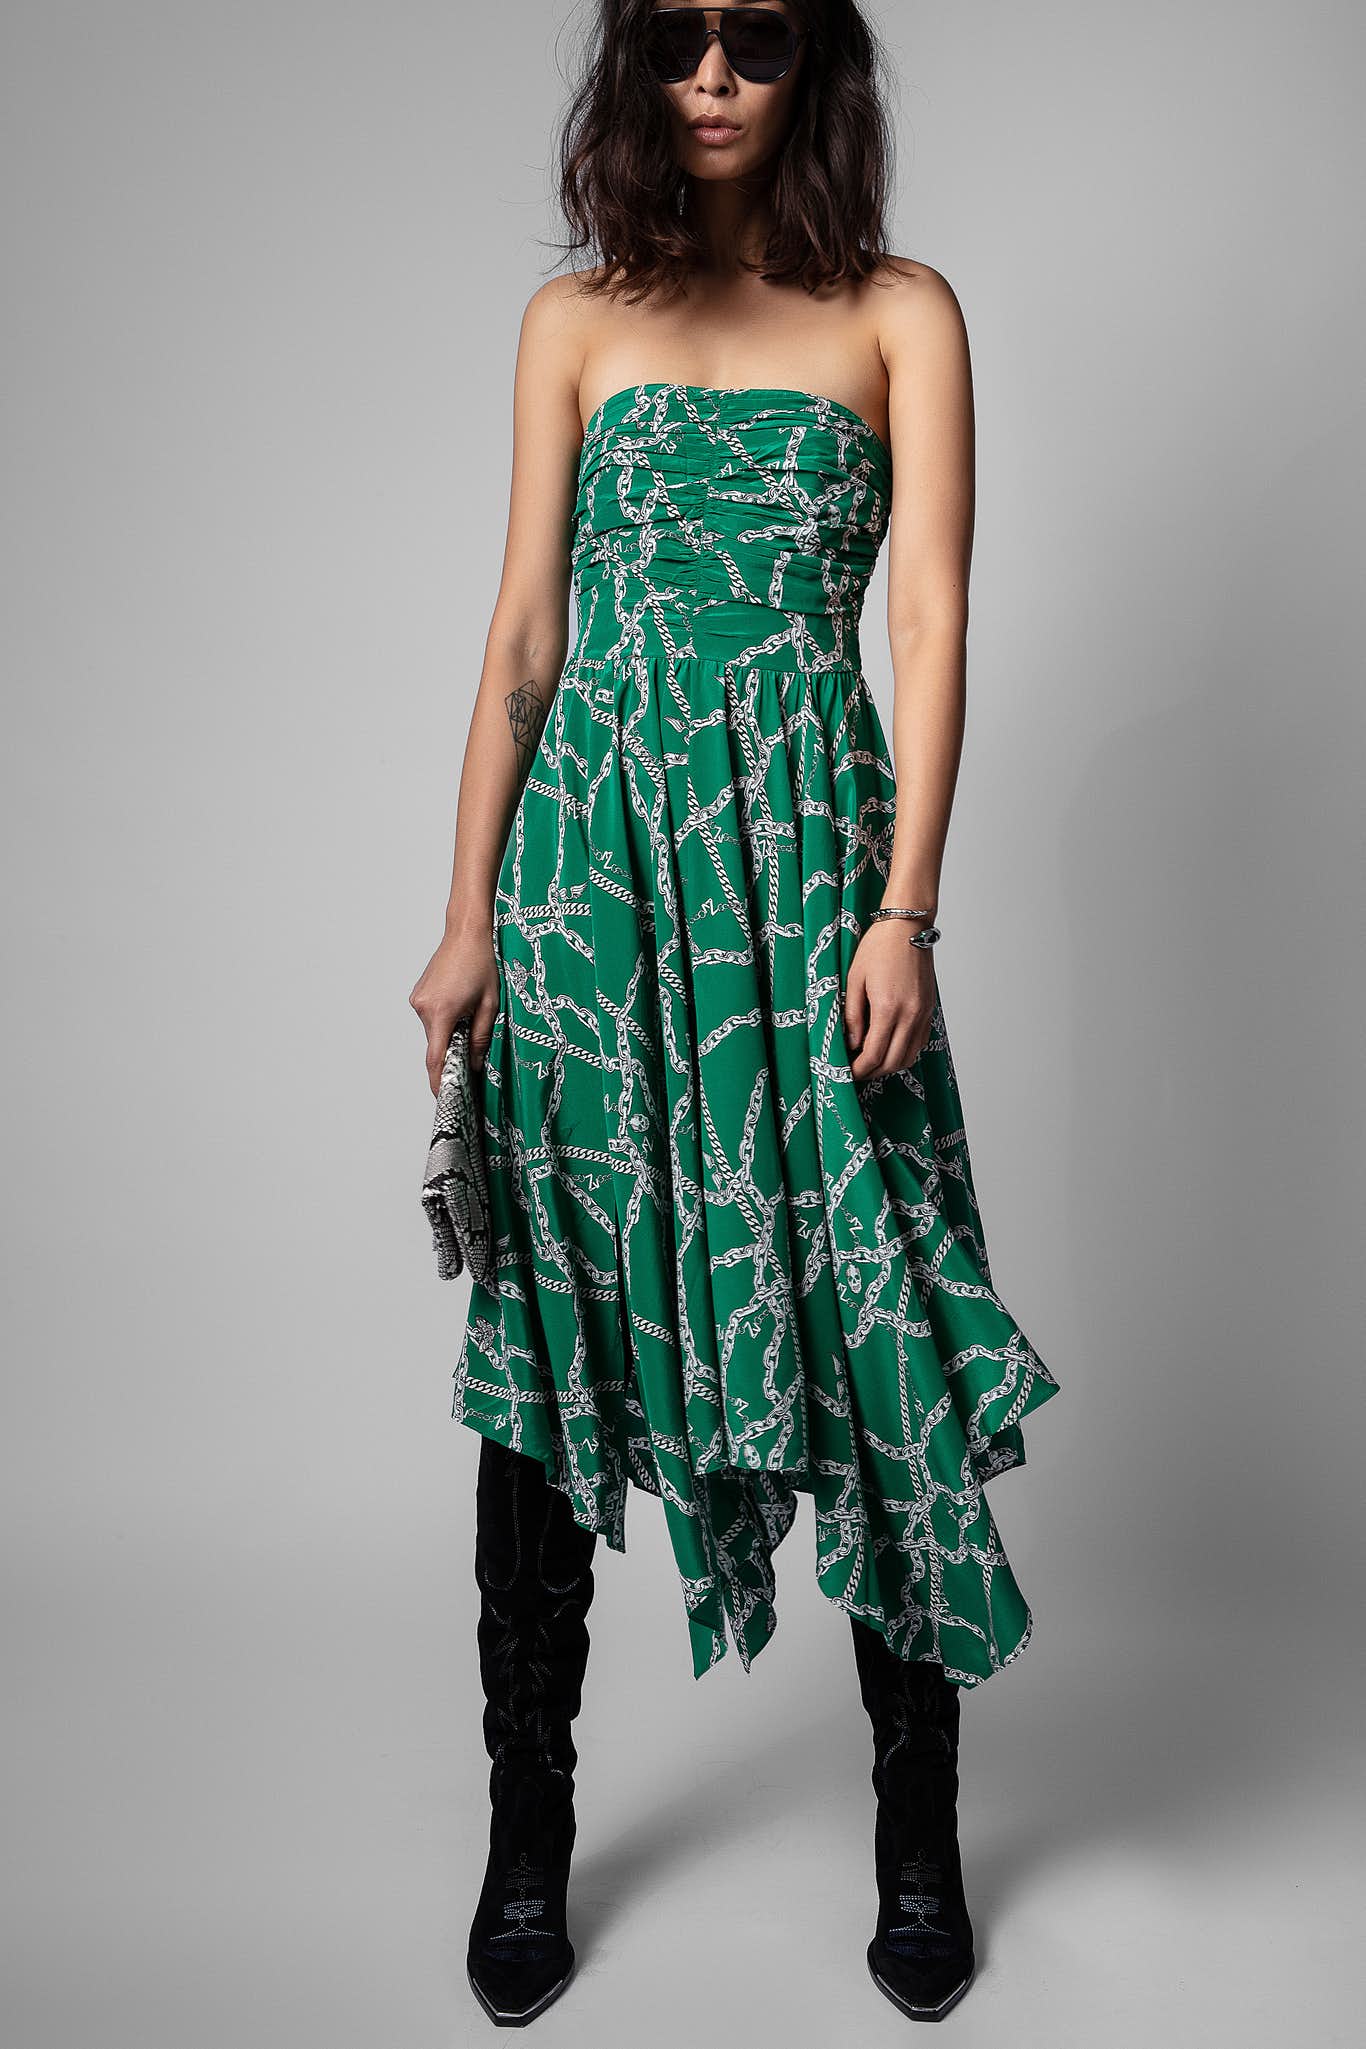 Zadig & Voltaire Raphia Strapless Chain Dress Emerald Green